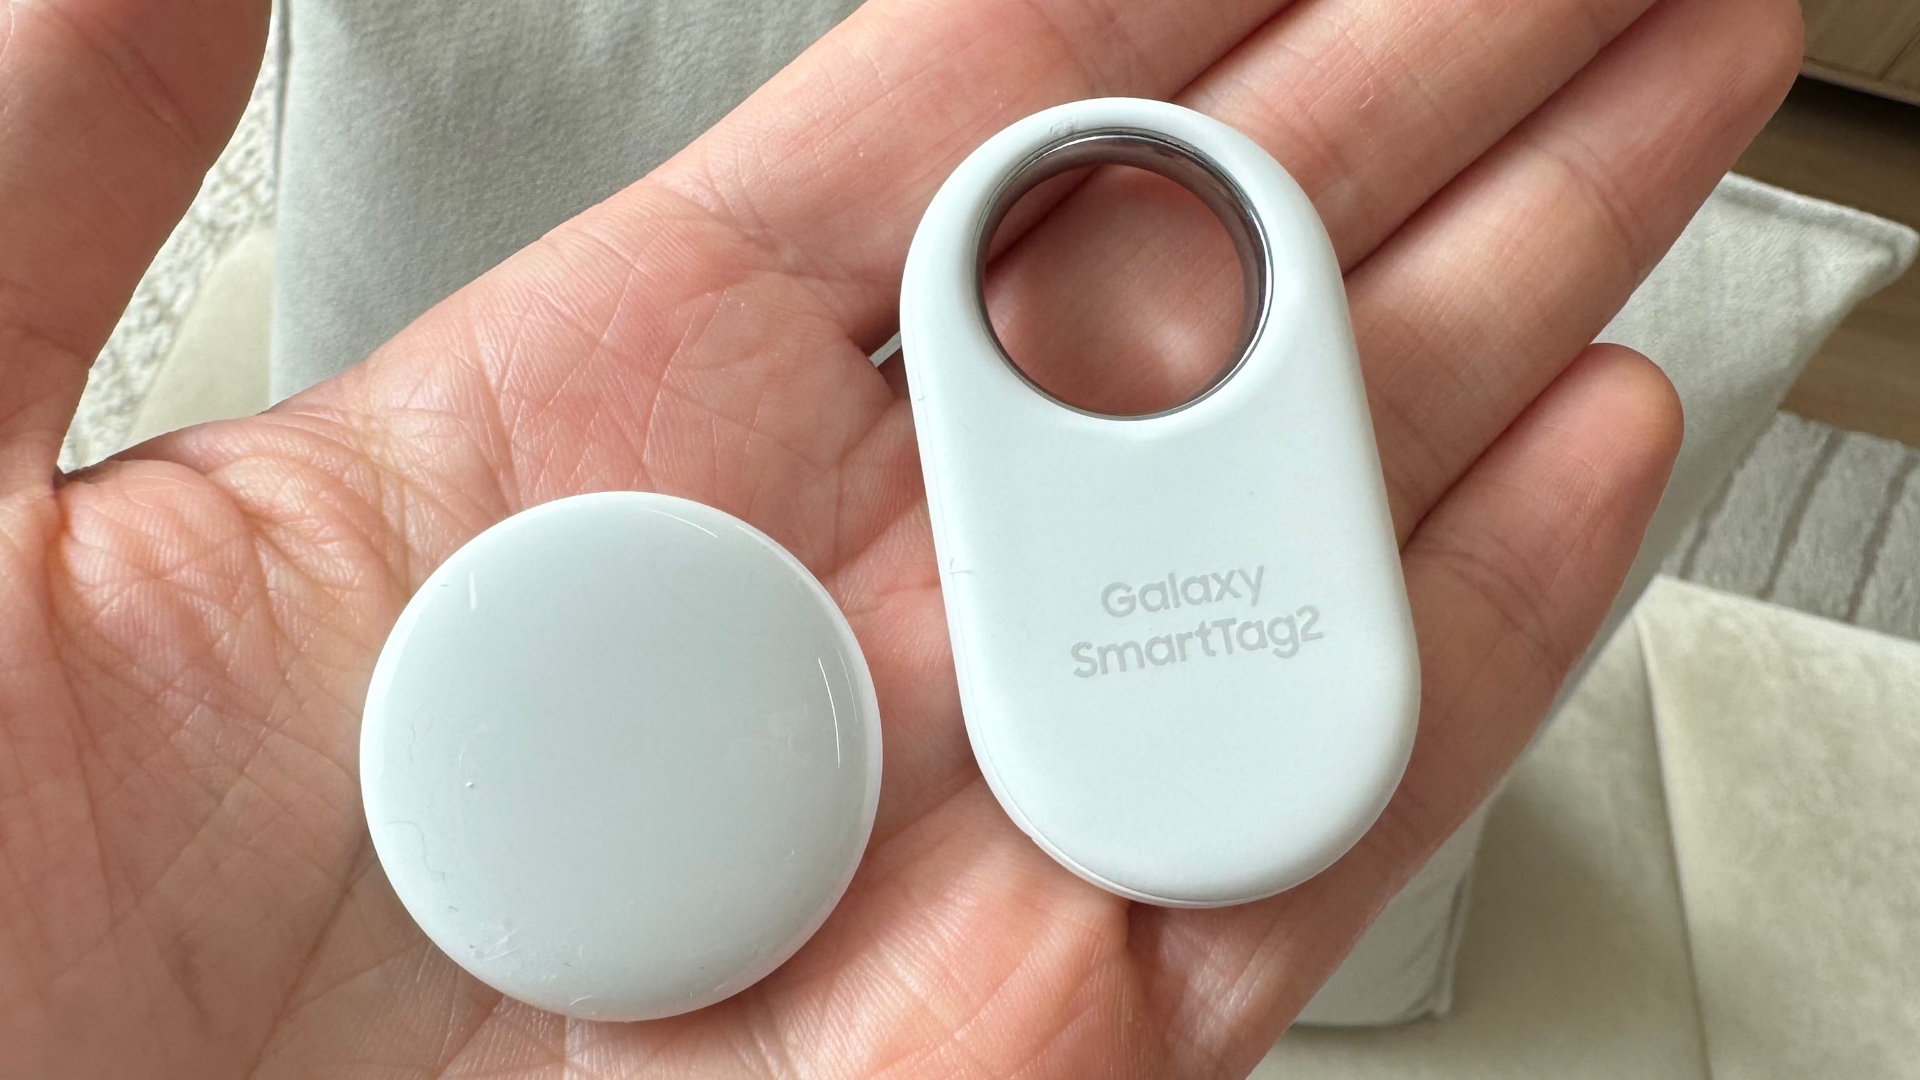 Test des Smartag+ de Samsung : les AirTags d'Apple, le réseau en moins -  Numerama